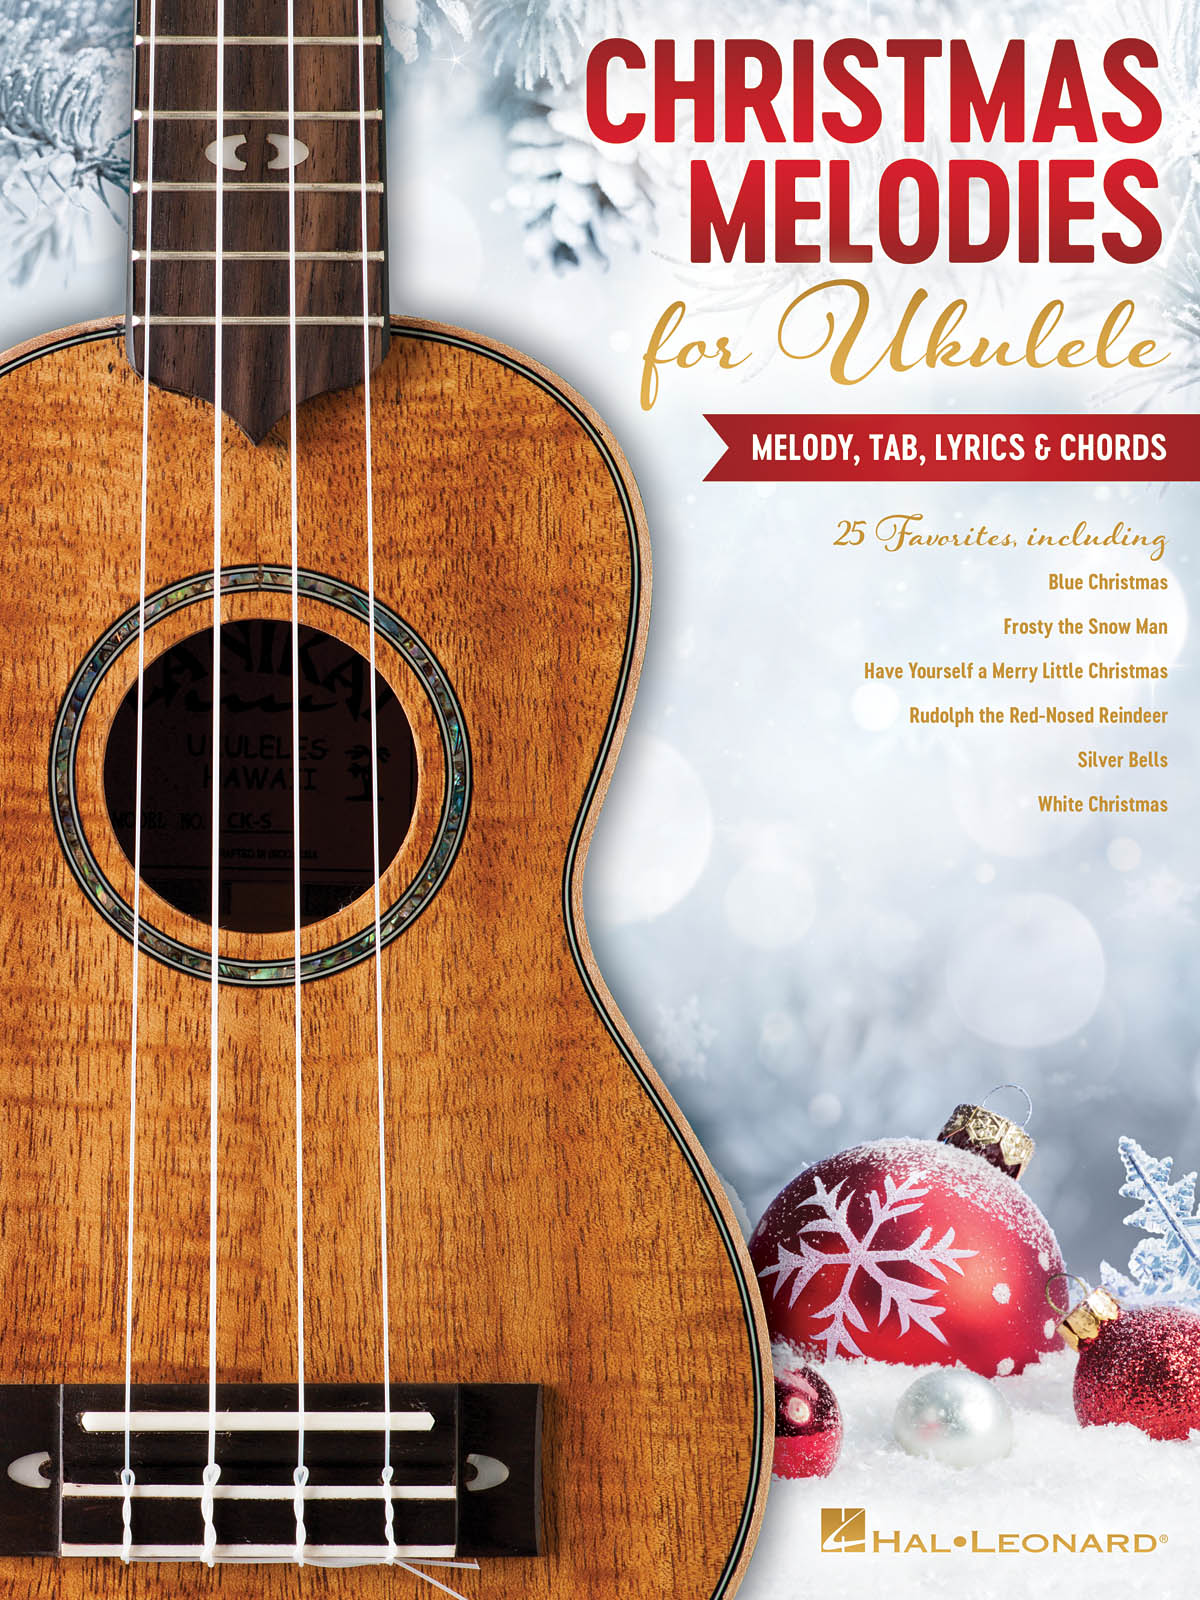 Image 1 of Christmas Melodies for Ukulele - SKU# 49-294855 : Product Type Media : Elderly Instruments